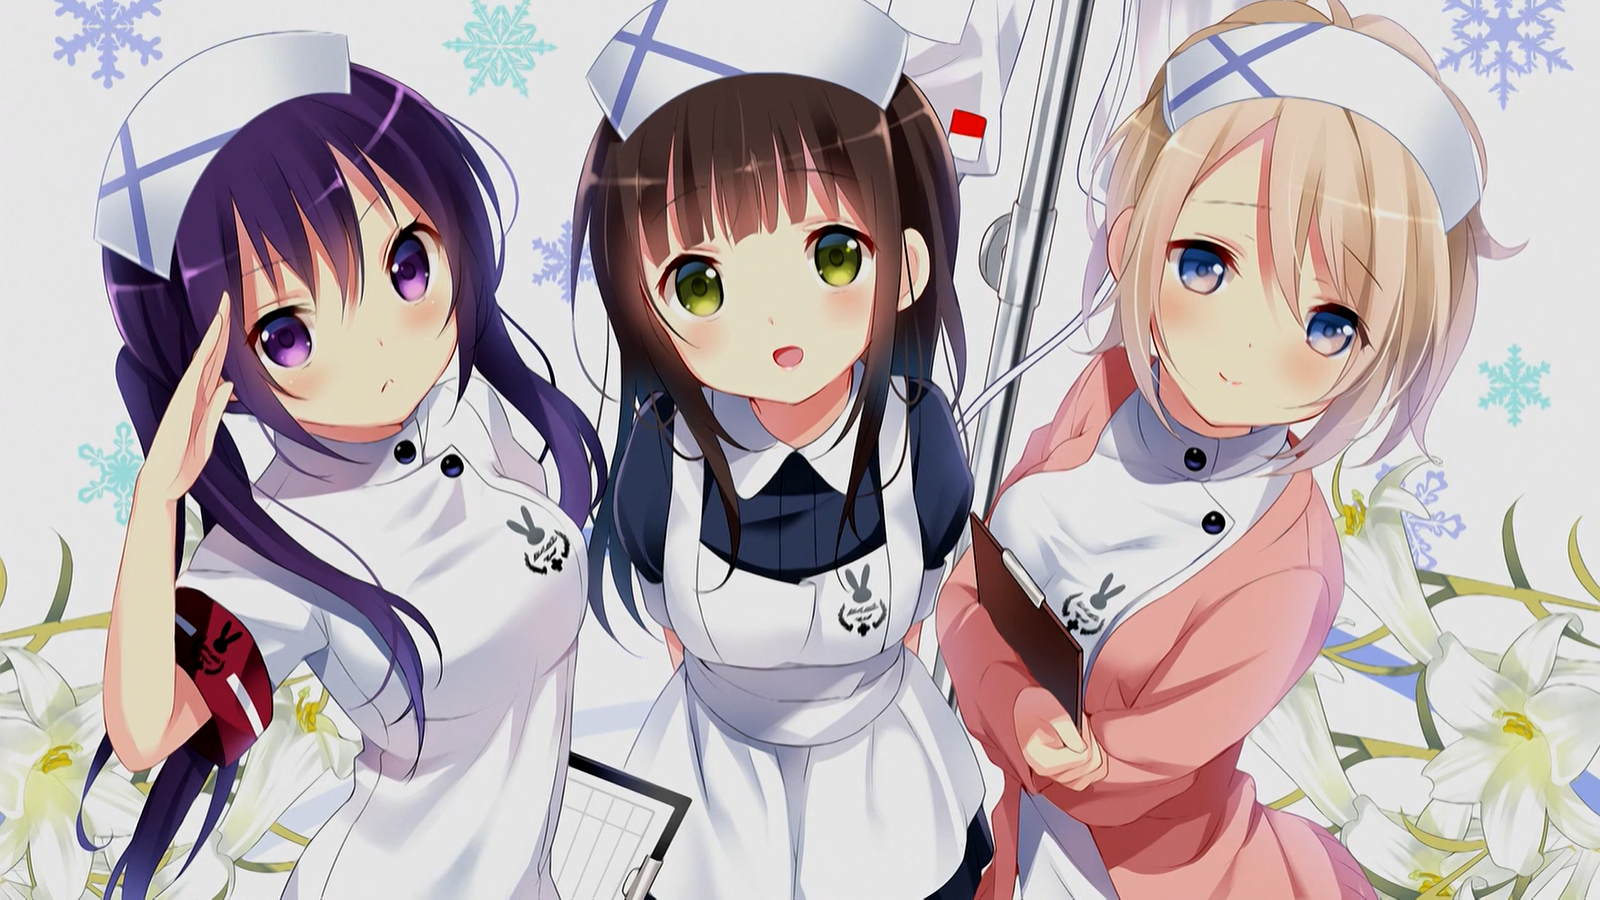 Anime Anime Girls Gochuumon Wa Usagi Desu Ka Salute Hat Blushing Snowflakes Flowers Looking At Viewe 1600x900